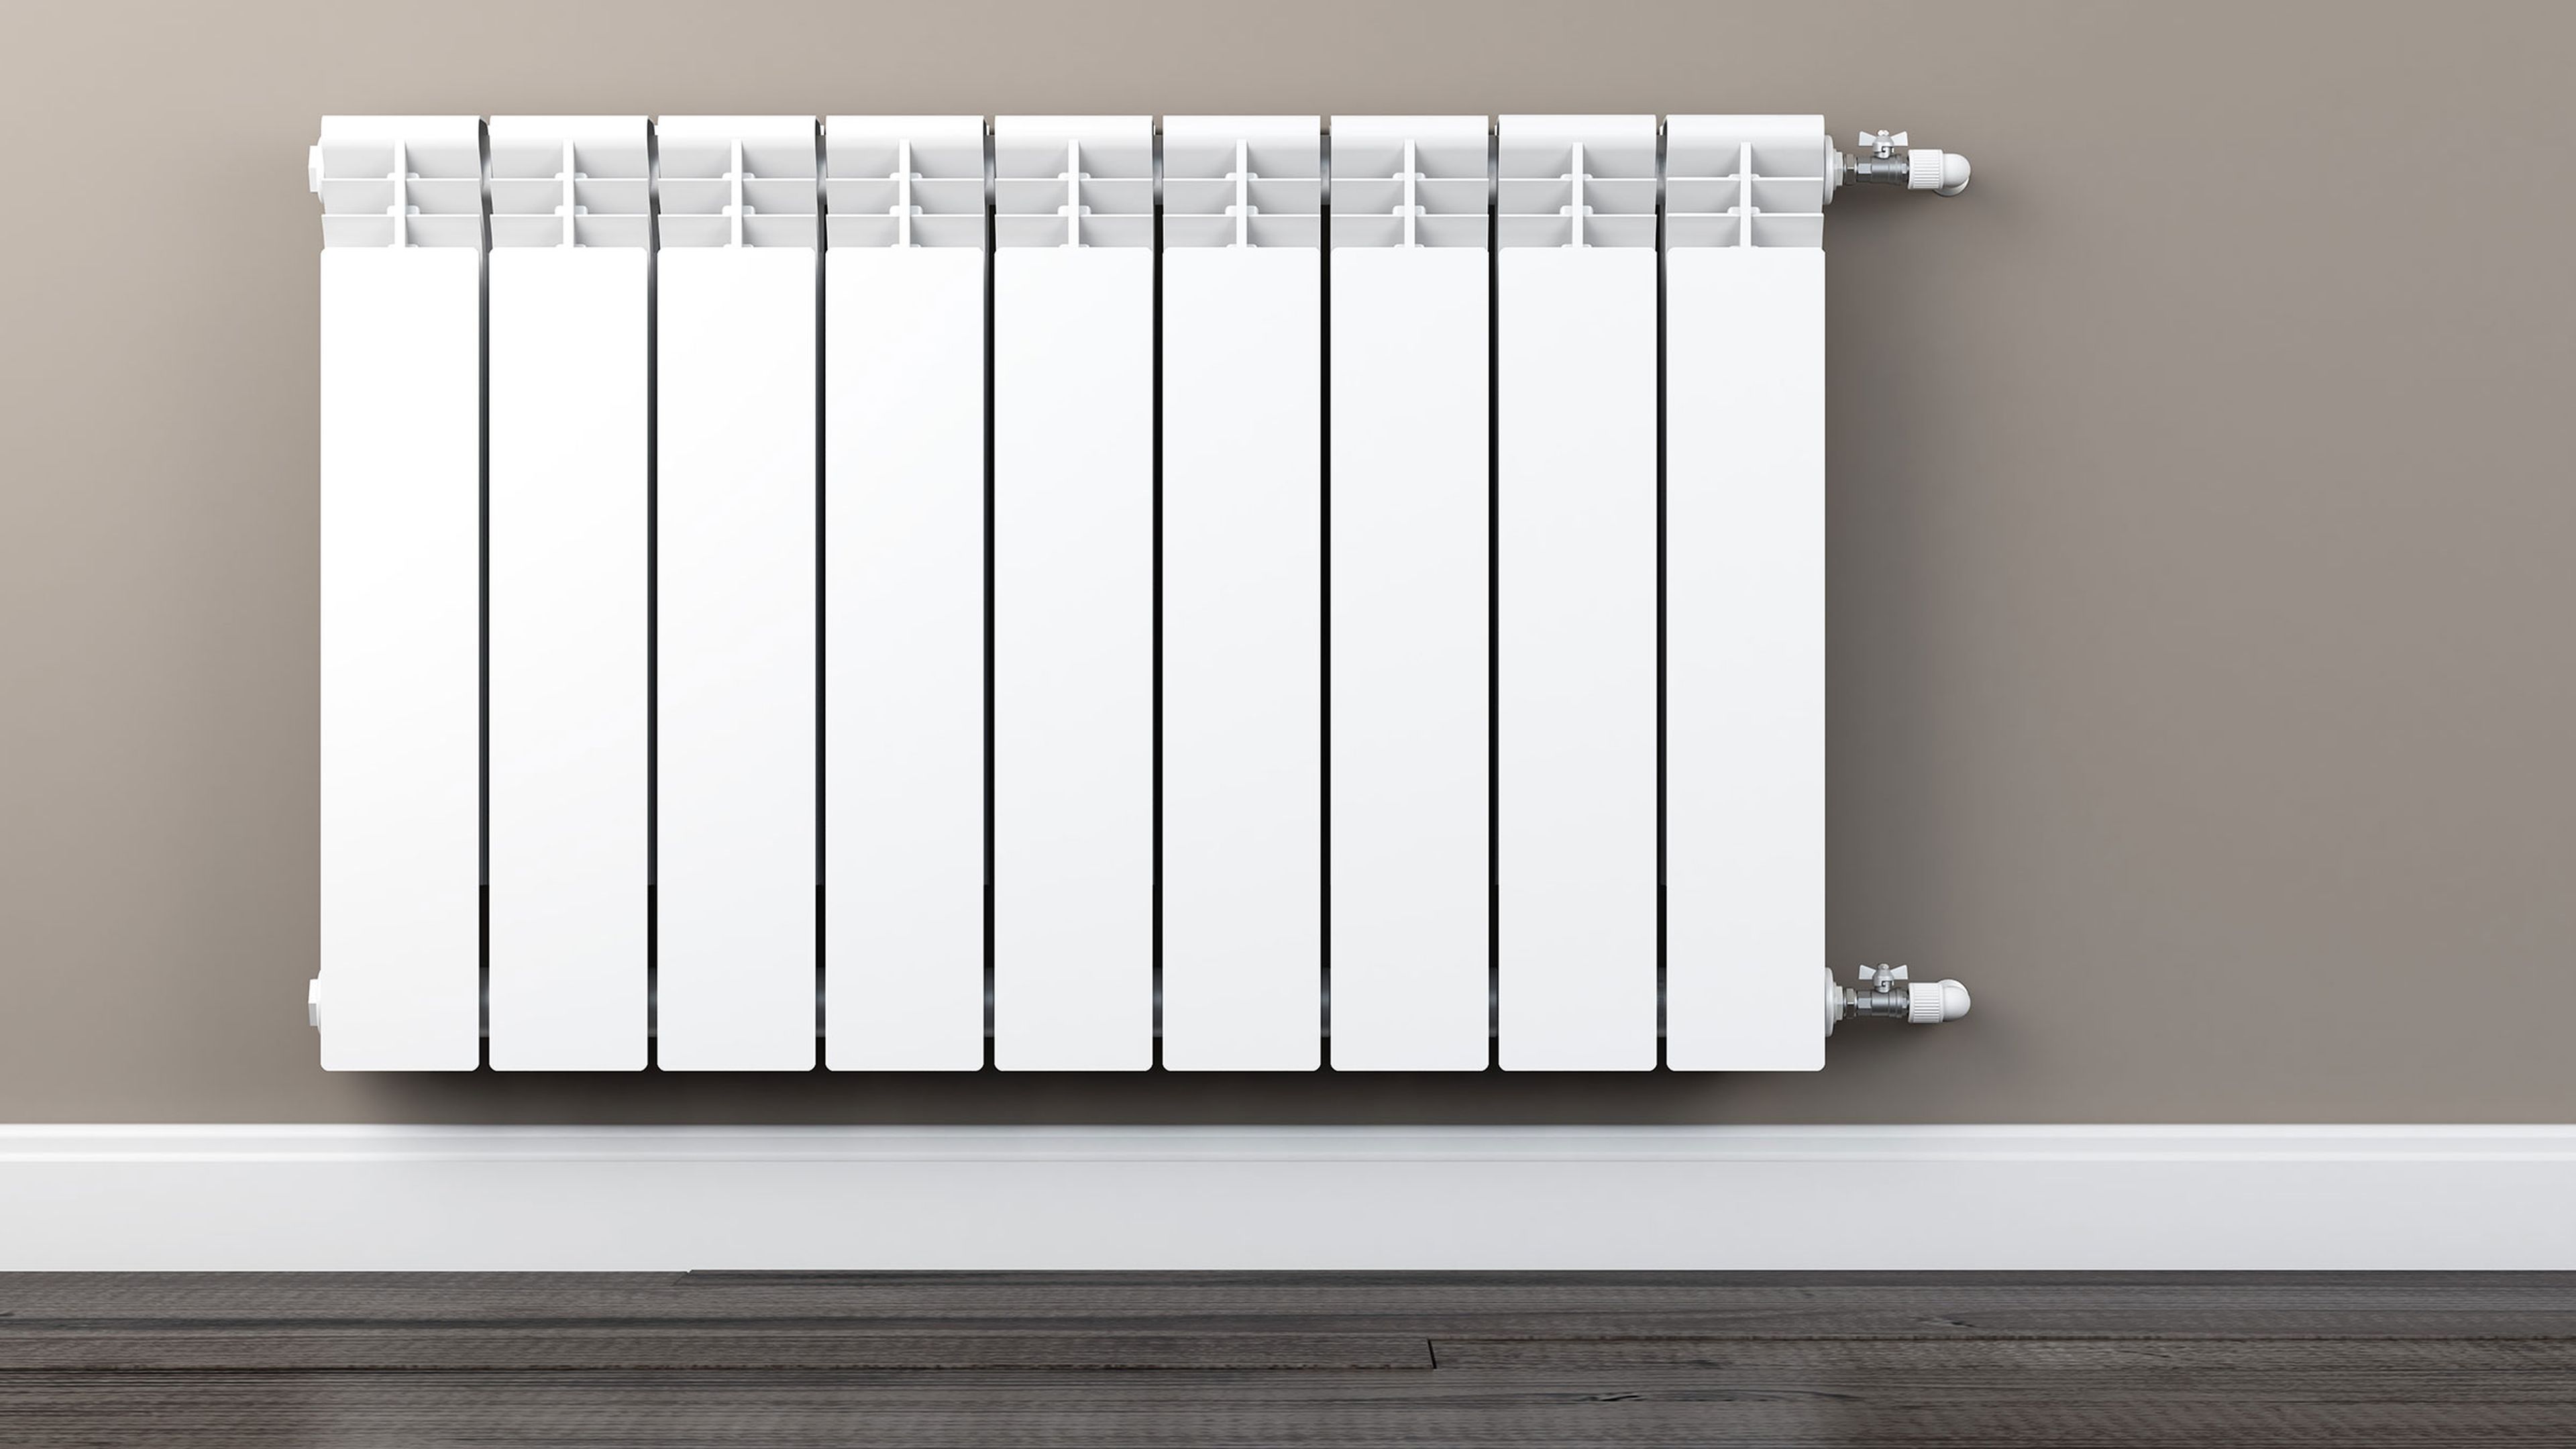 El truco definitivo para limpiar los radiadores que hemos visto en Instagram